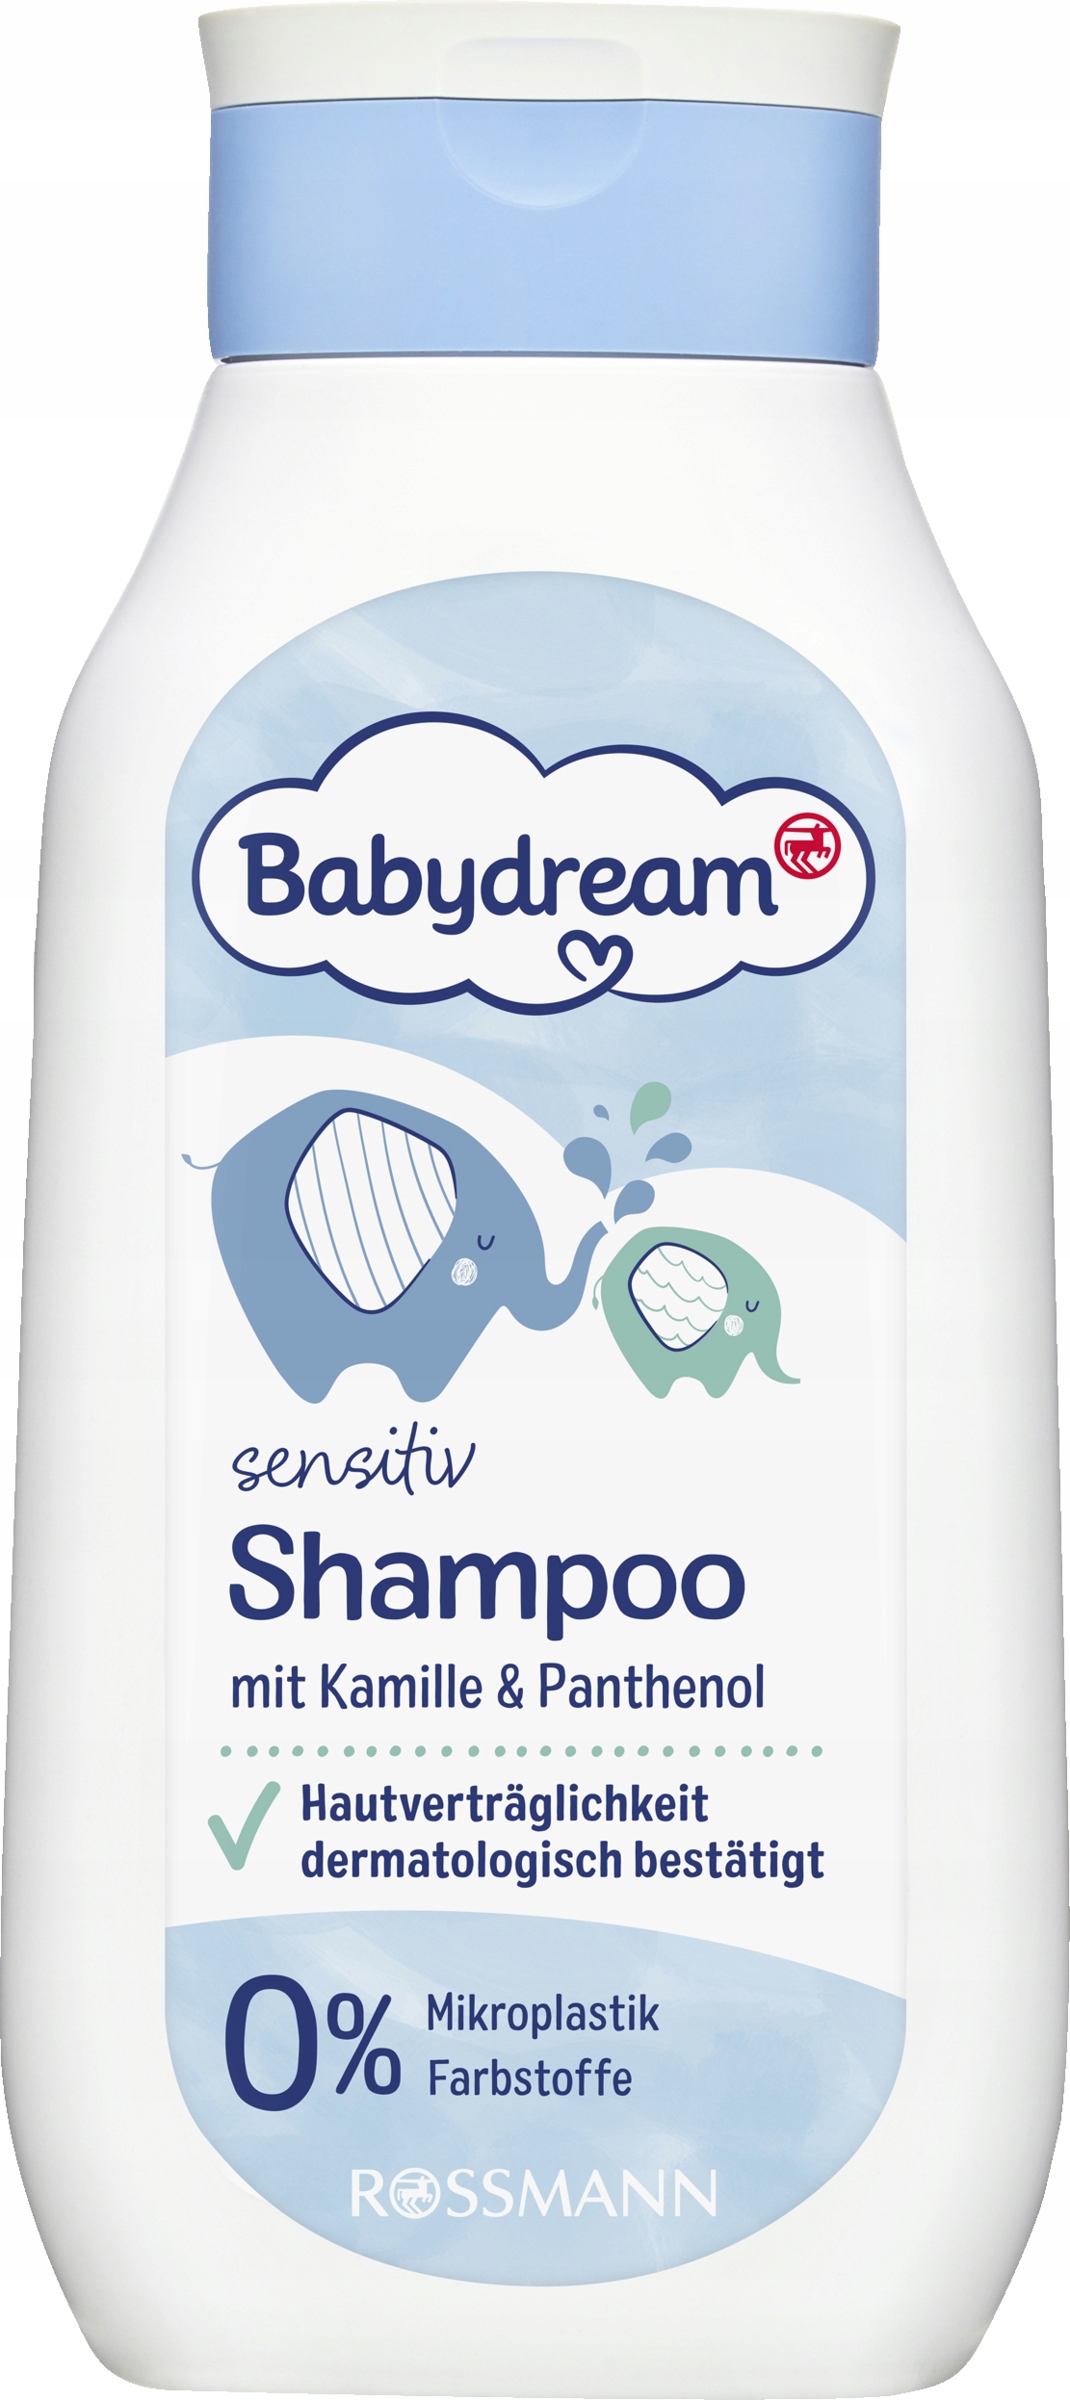 szampon babydream dla doroslych